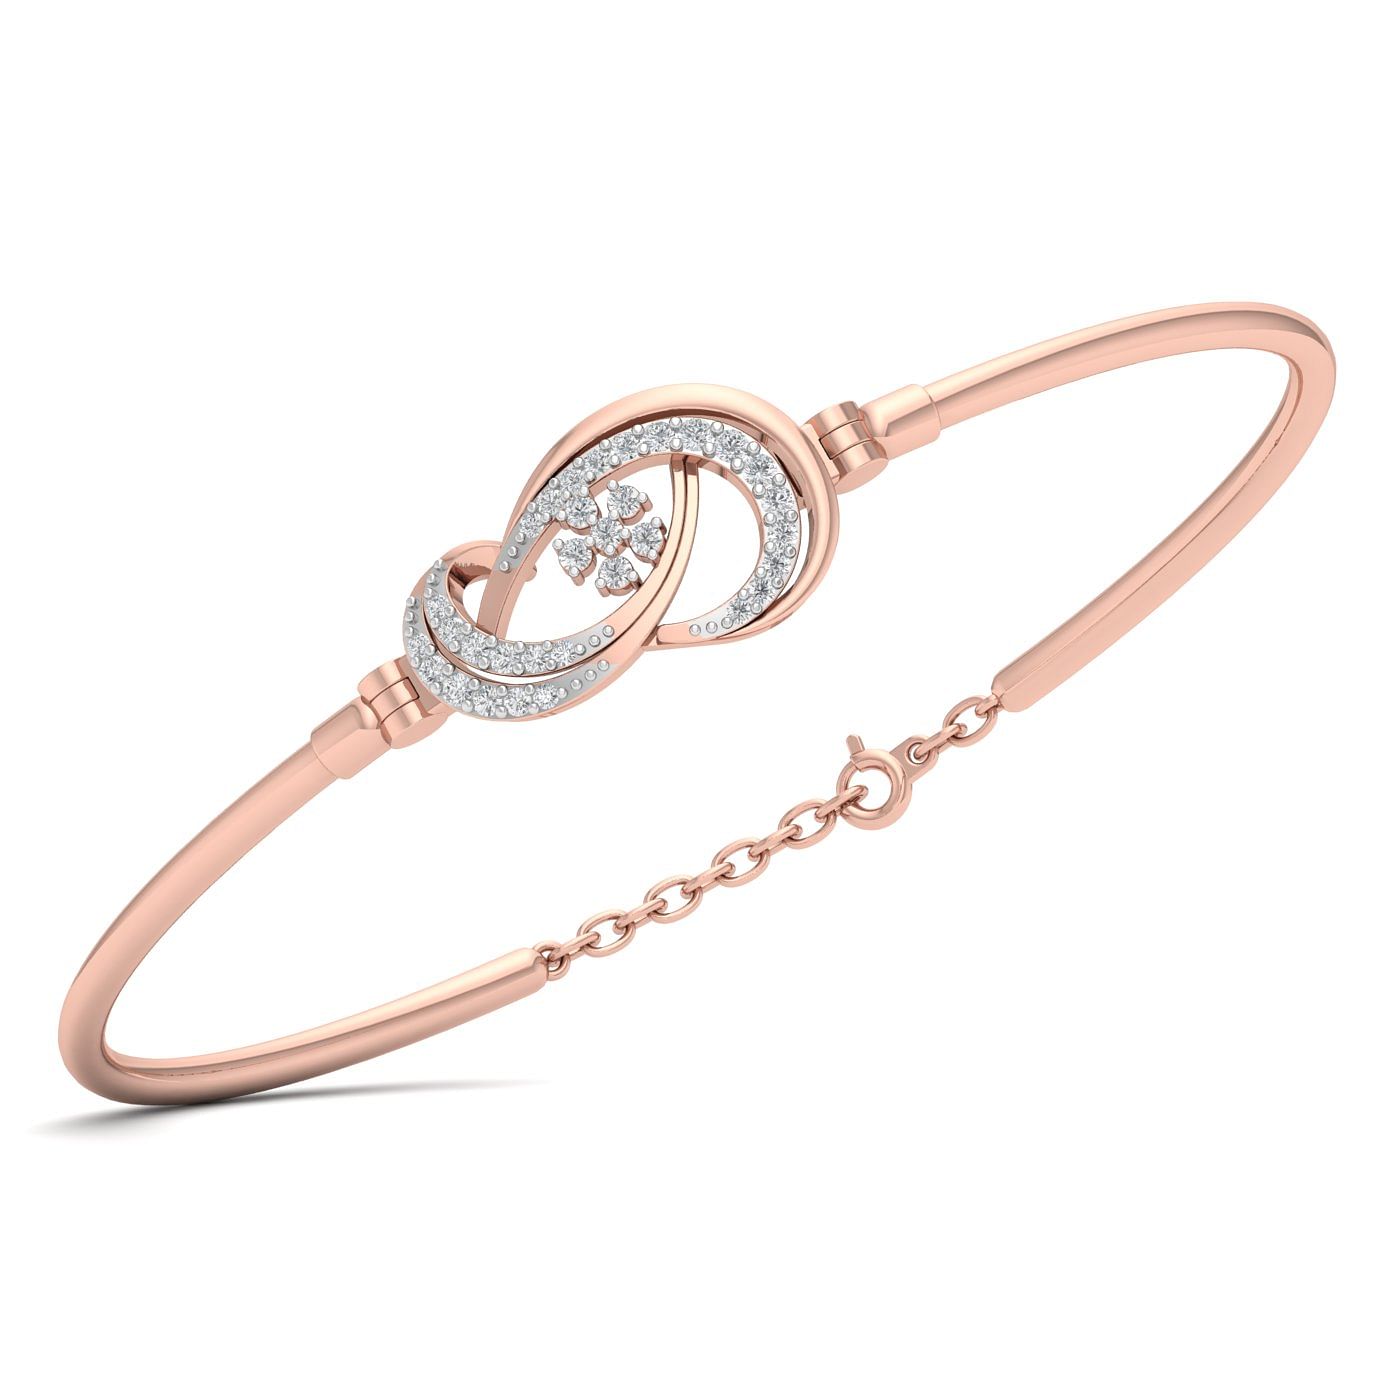 Rose Gold Aubree Diamond Bracelet For Wedding Gift